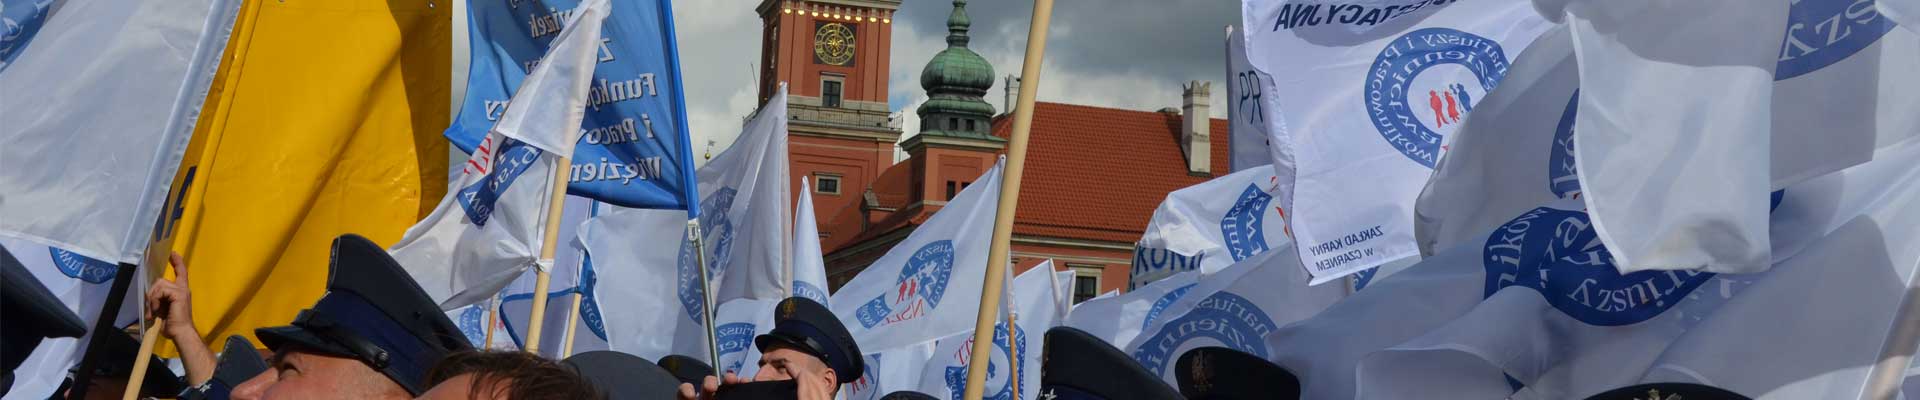 Obradował Komitet Protestacyjny Wielkopolskiej FZZSM